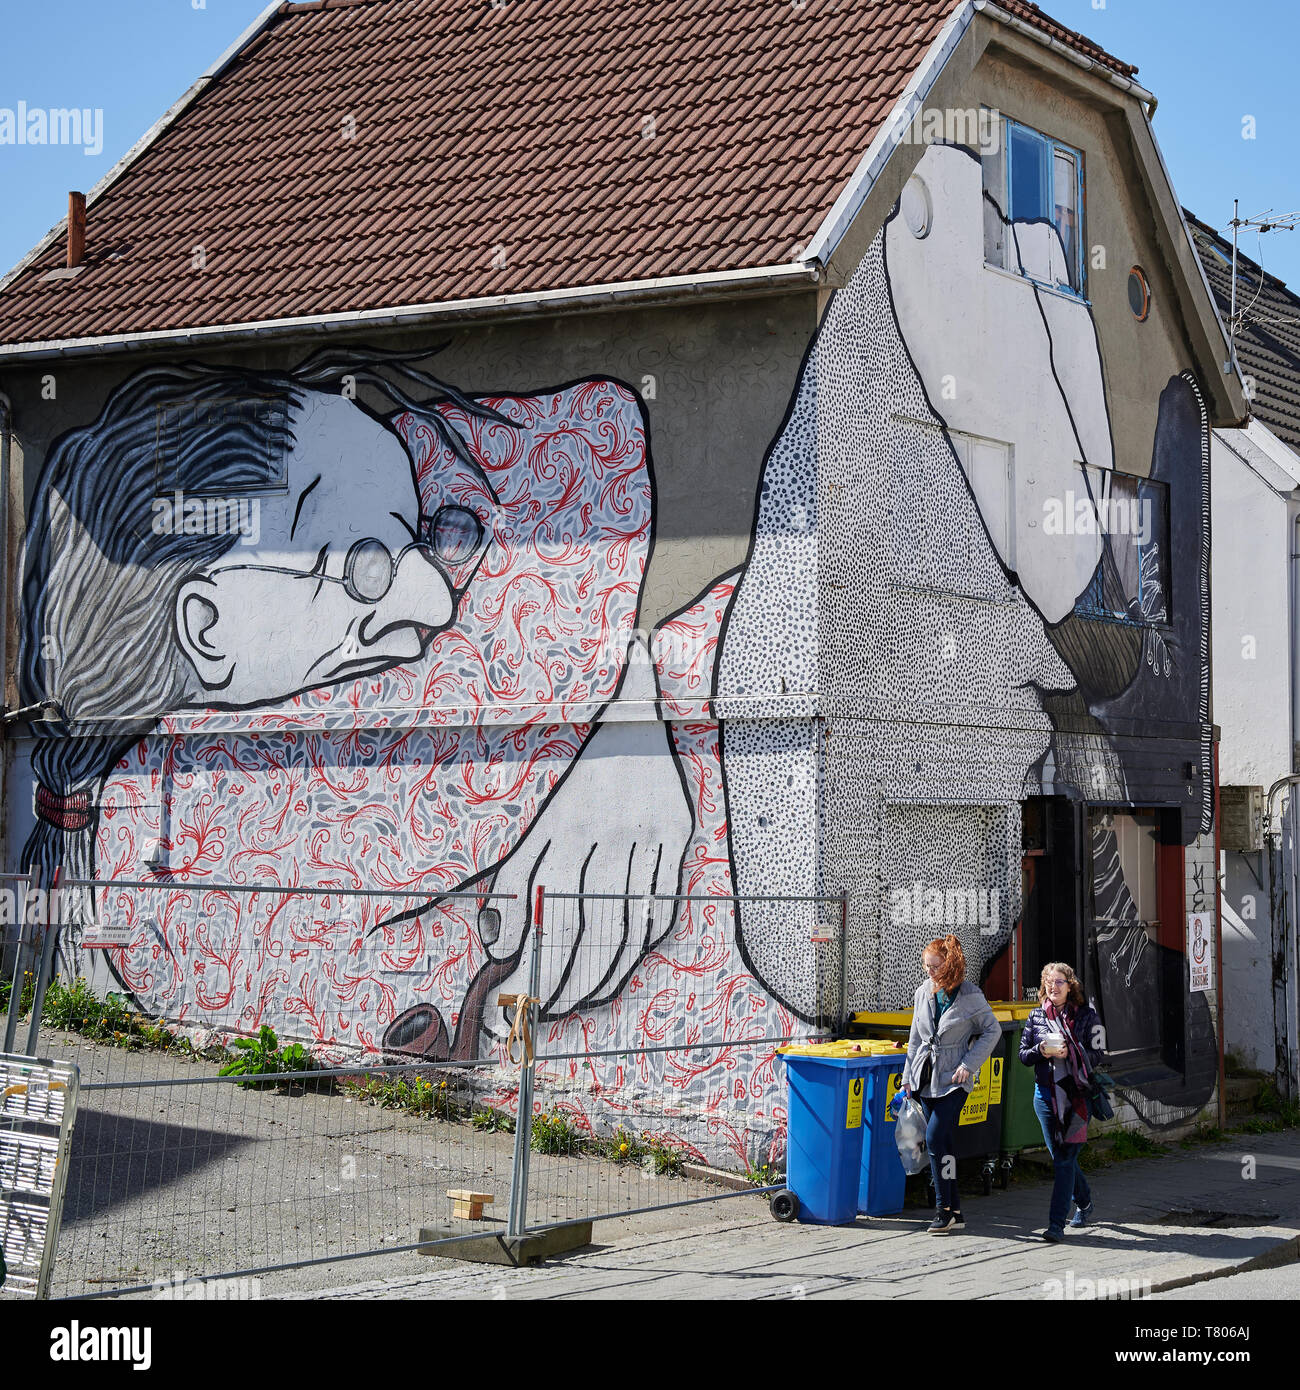 Un modo splendido per scoprire la città di Stavanger, come si caccia di arte urbana nei posti più improbabili. Foto Stock